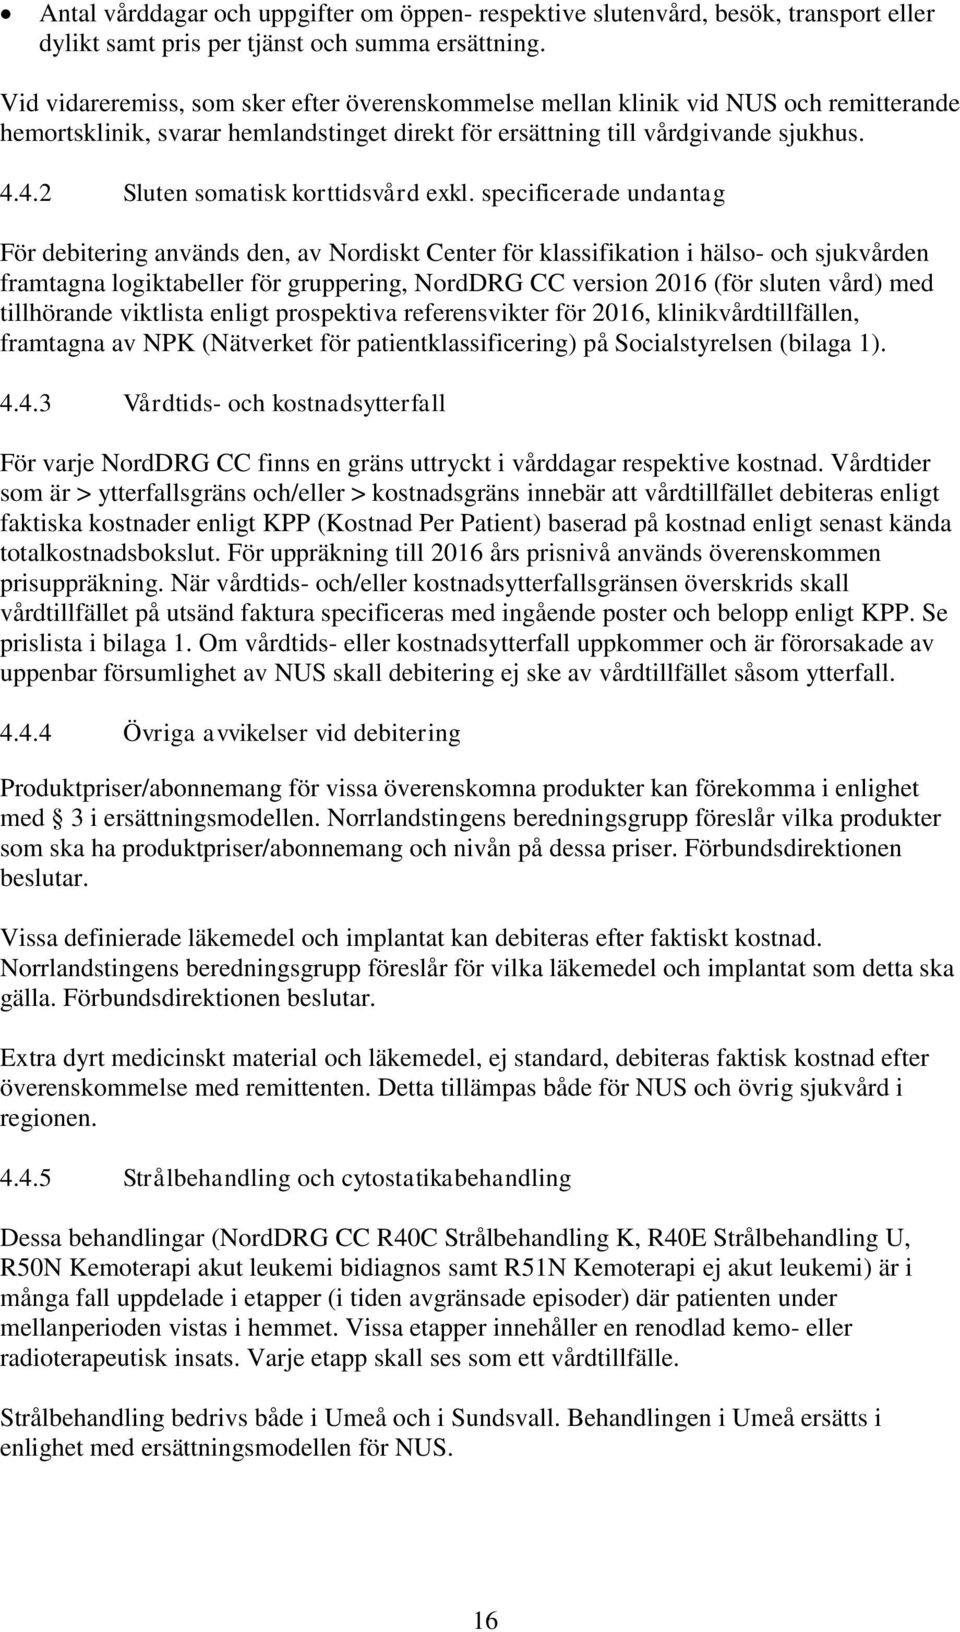 4.2 Sluten somatisk korttidsvård exkl.